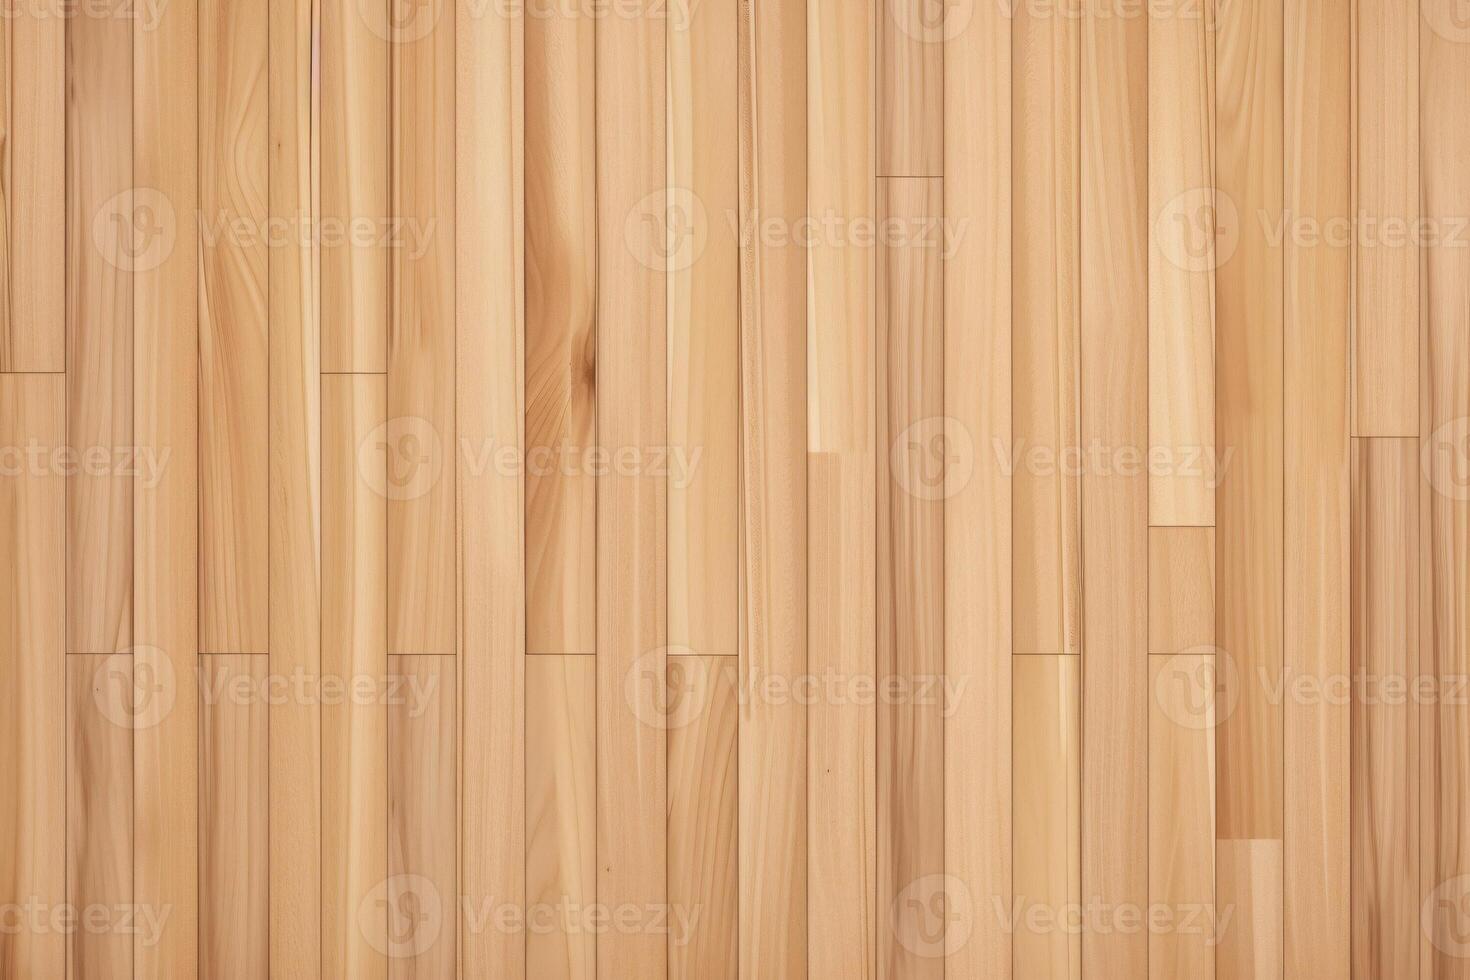 Parkett Holz Muster Hintergrund, Holz Parkett Textur, hölzern Parkett Hintergrund, Holz Planke Fischgrätenmuster Muster, Parkett Boden, foto